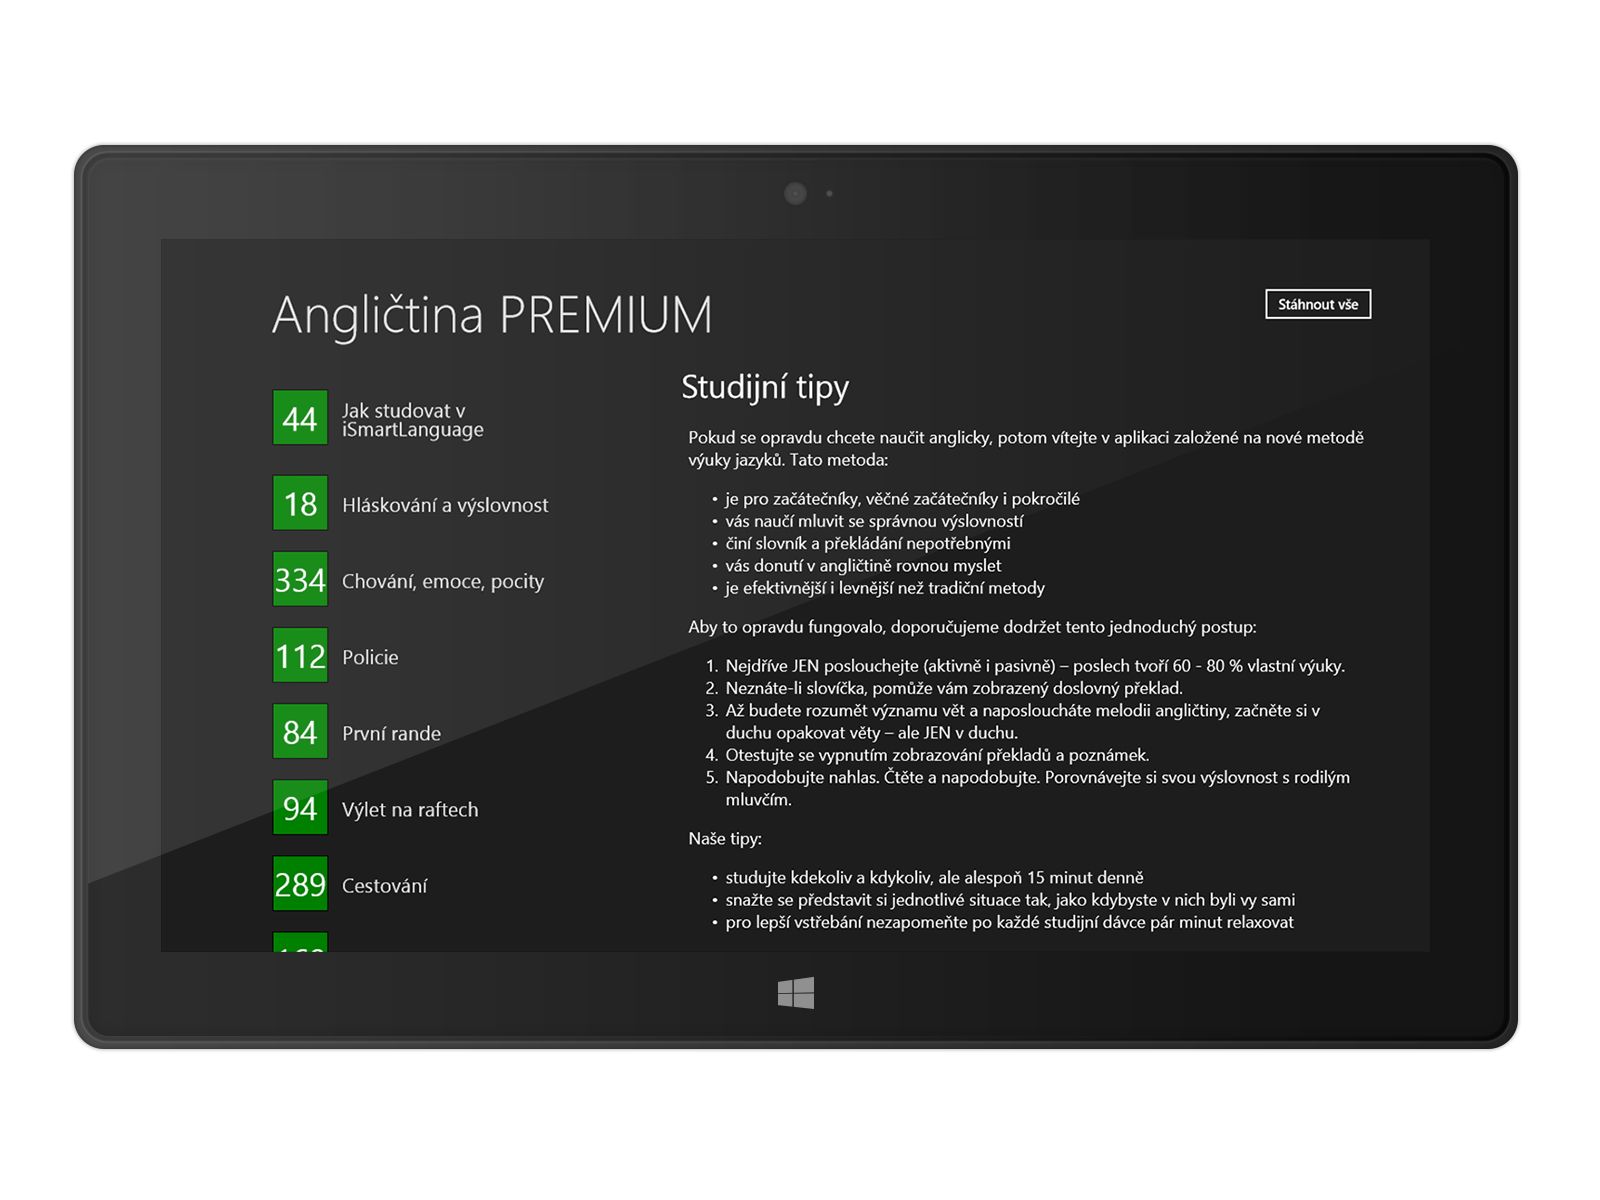 Angličtina PREMIUM na Windows - seznam lekcí